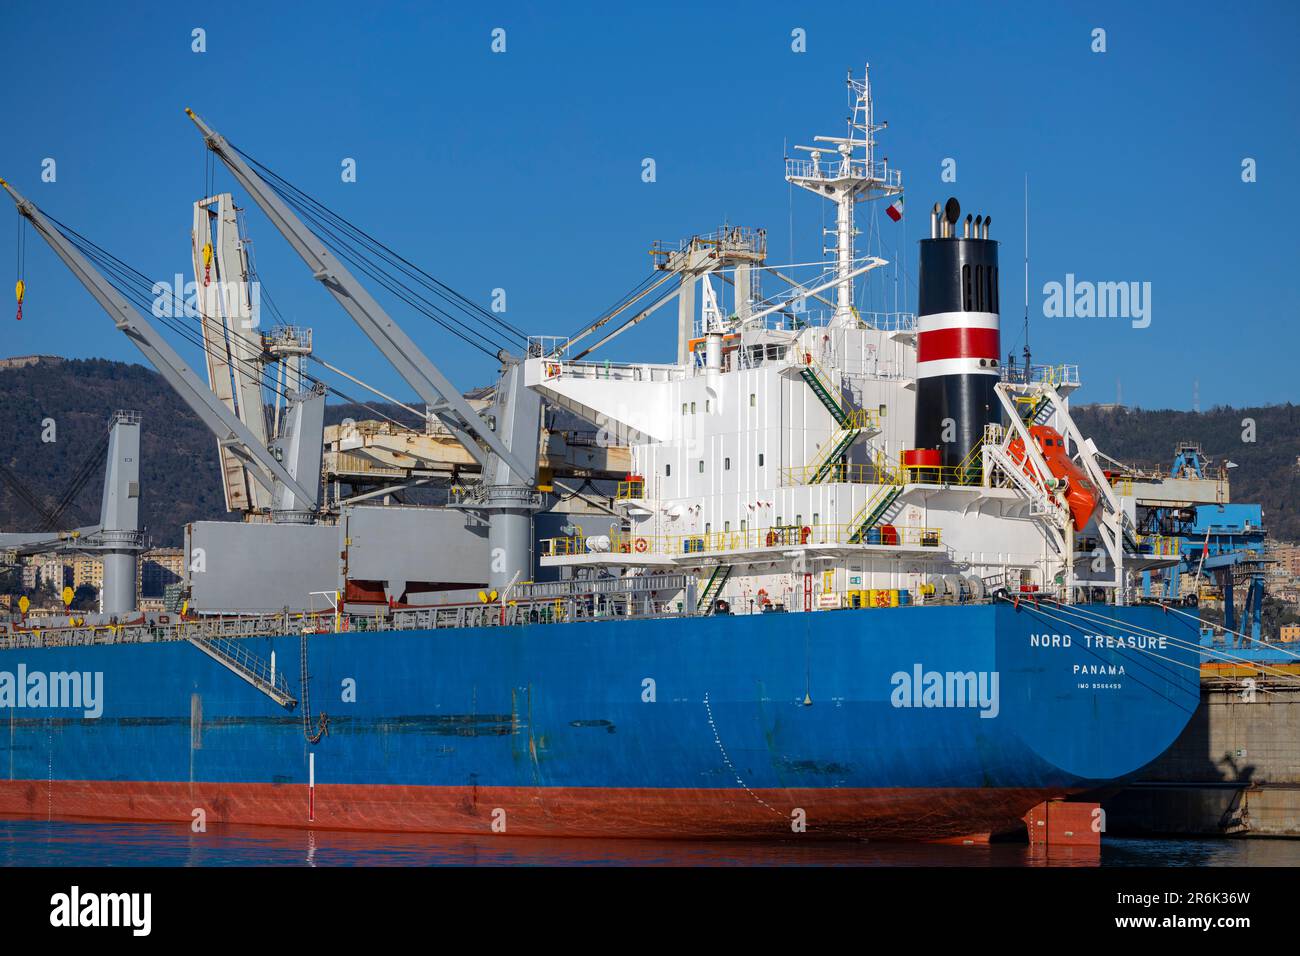 GENOA, ITALY, FEBRUARY 2, 2023 - The North Treasure industrial ship of Panama moored in the port of Genoa, Italy Stock Photo